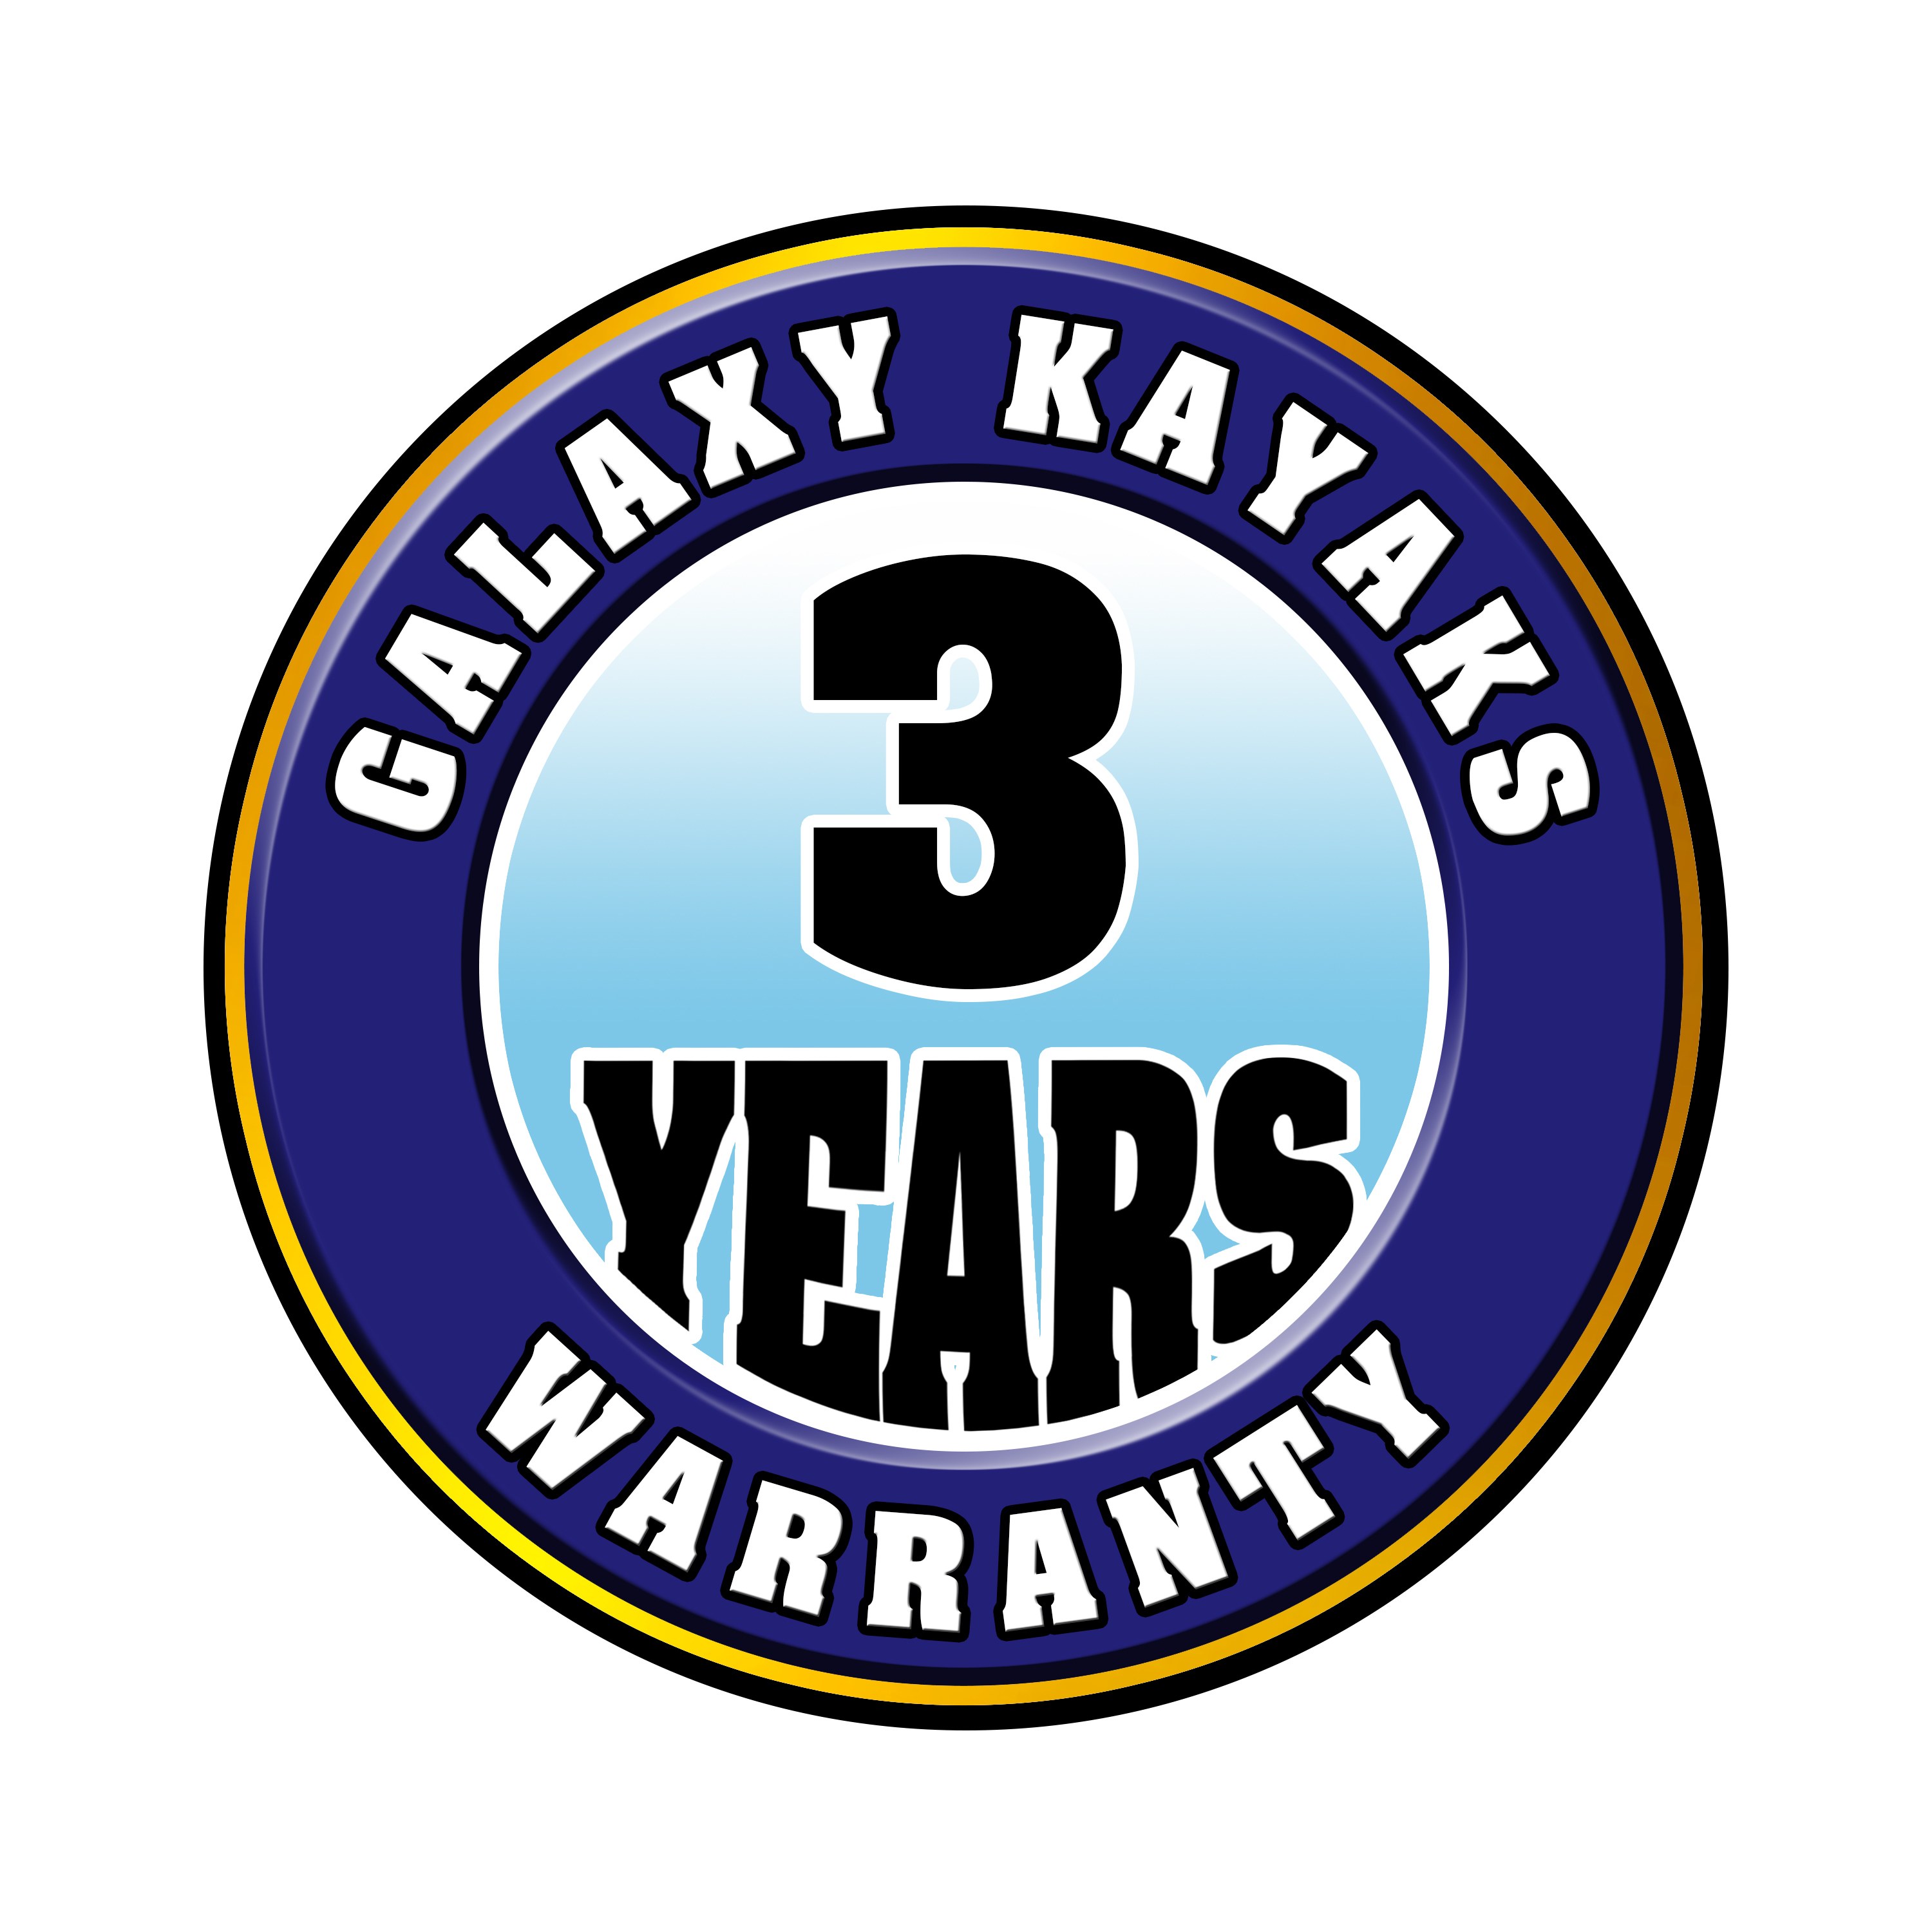 Galaxy Kayaks 3 Years Warranty